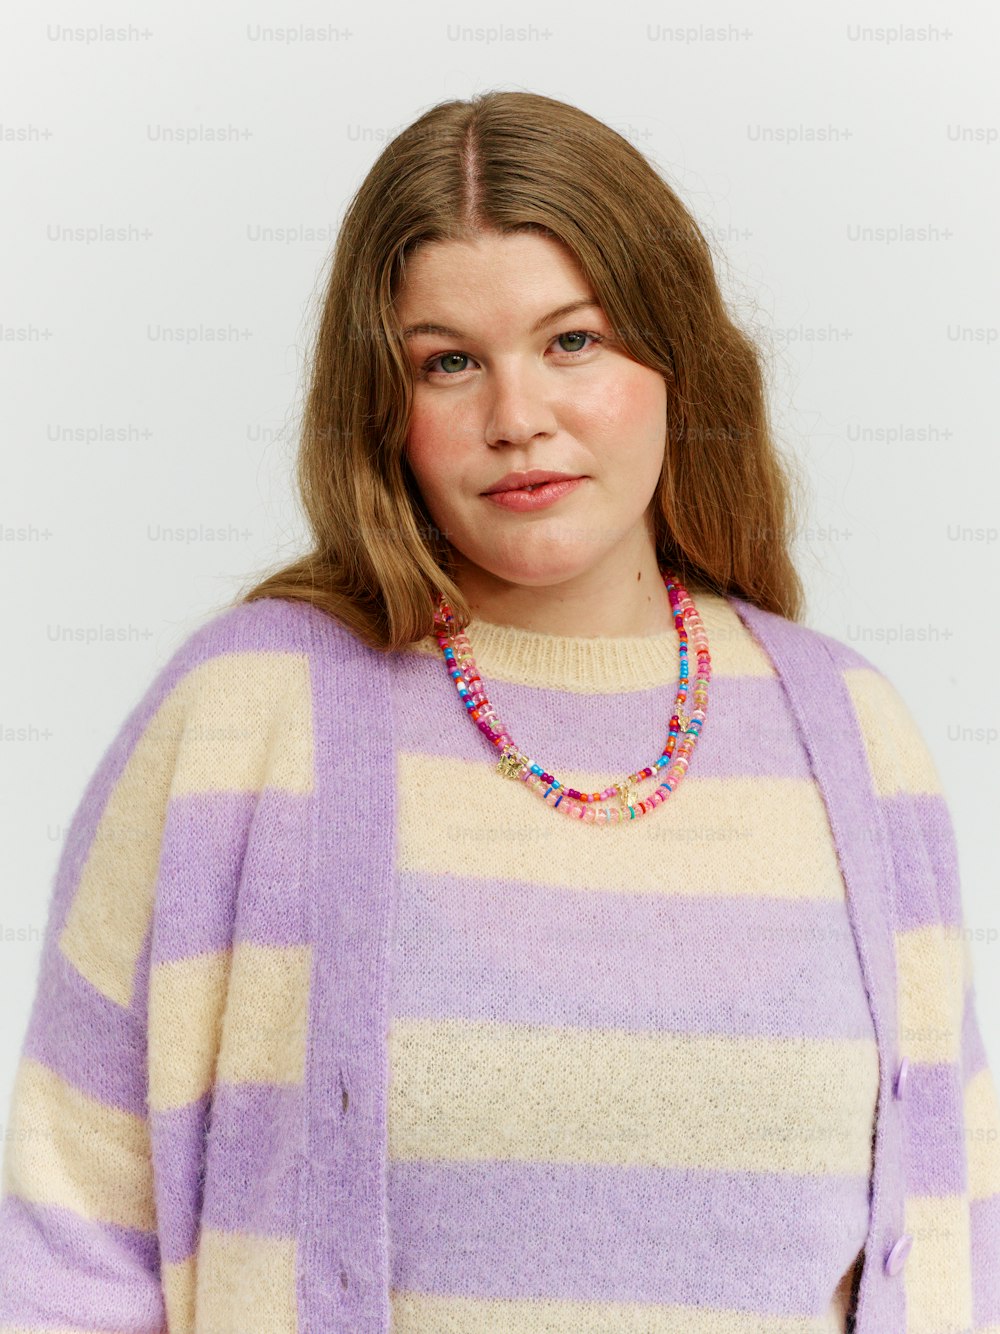 una mujer con un suéter de rayas moradas y blancas